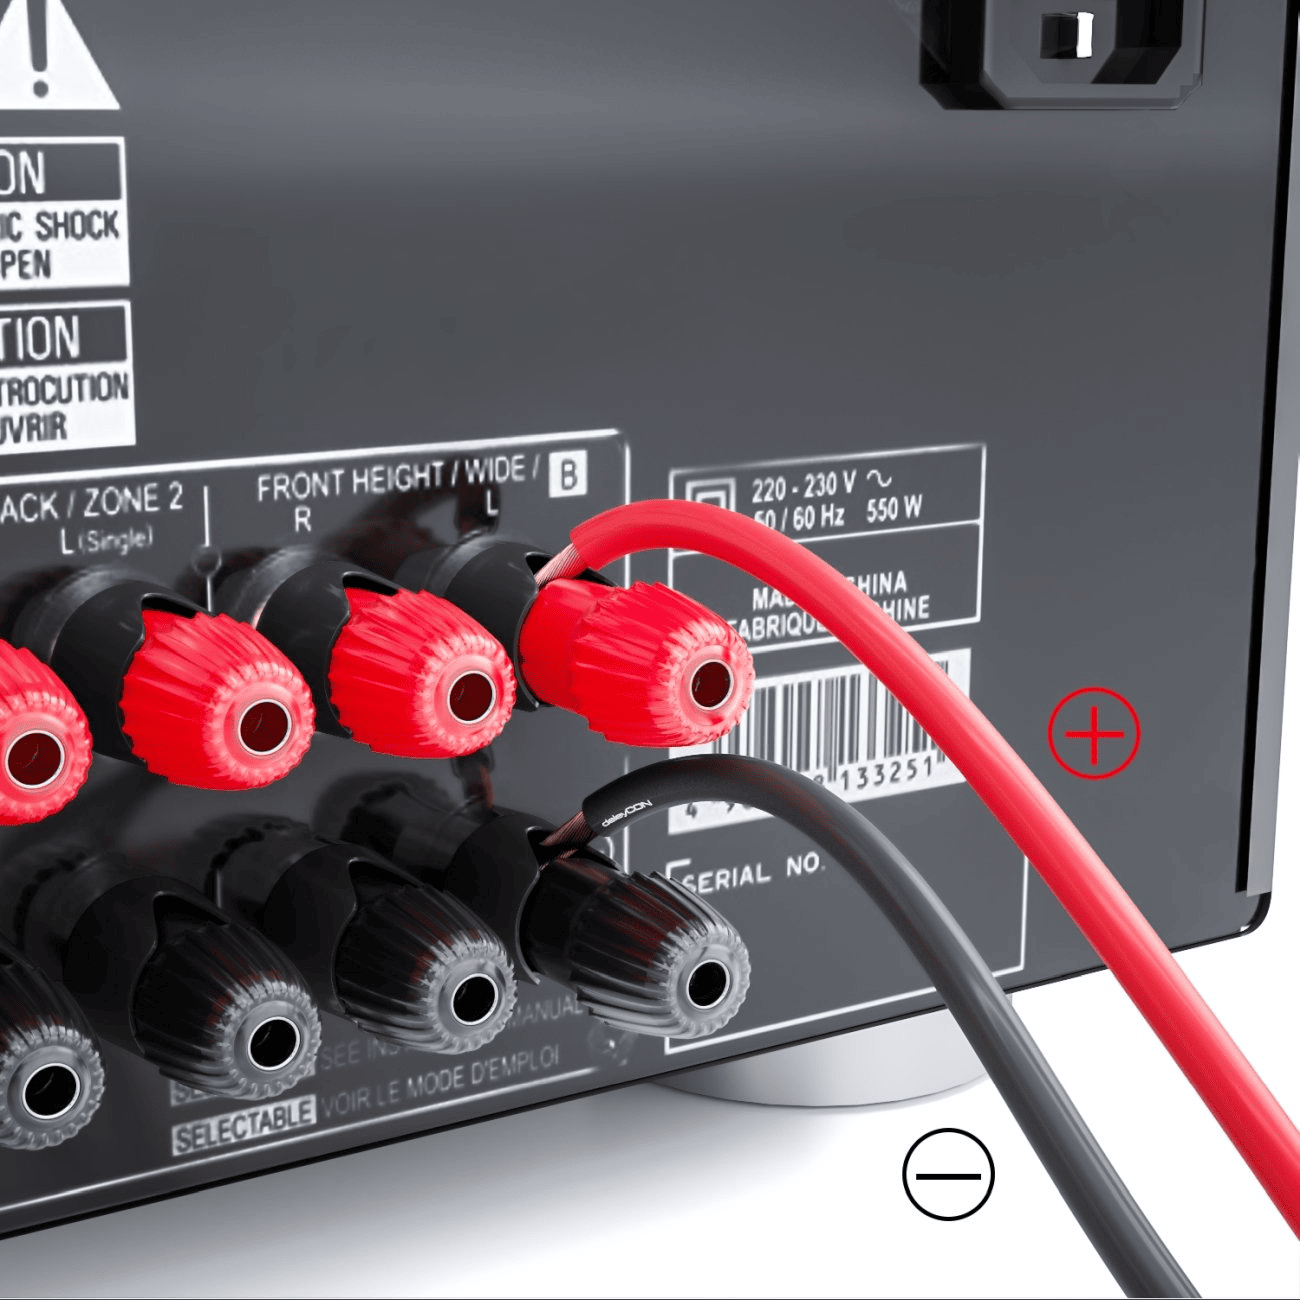 Cable de Altavoz - 2x 1,50 mm2 - 25,0 m - Brida - Negro / Rojo - DJMania